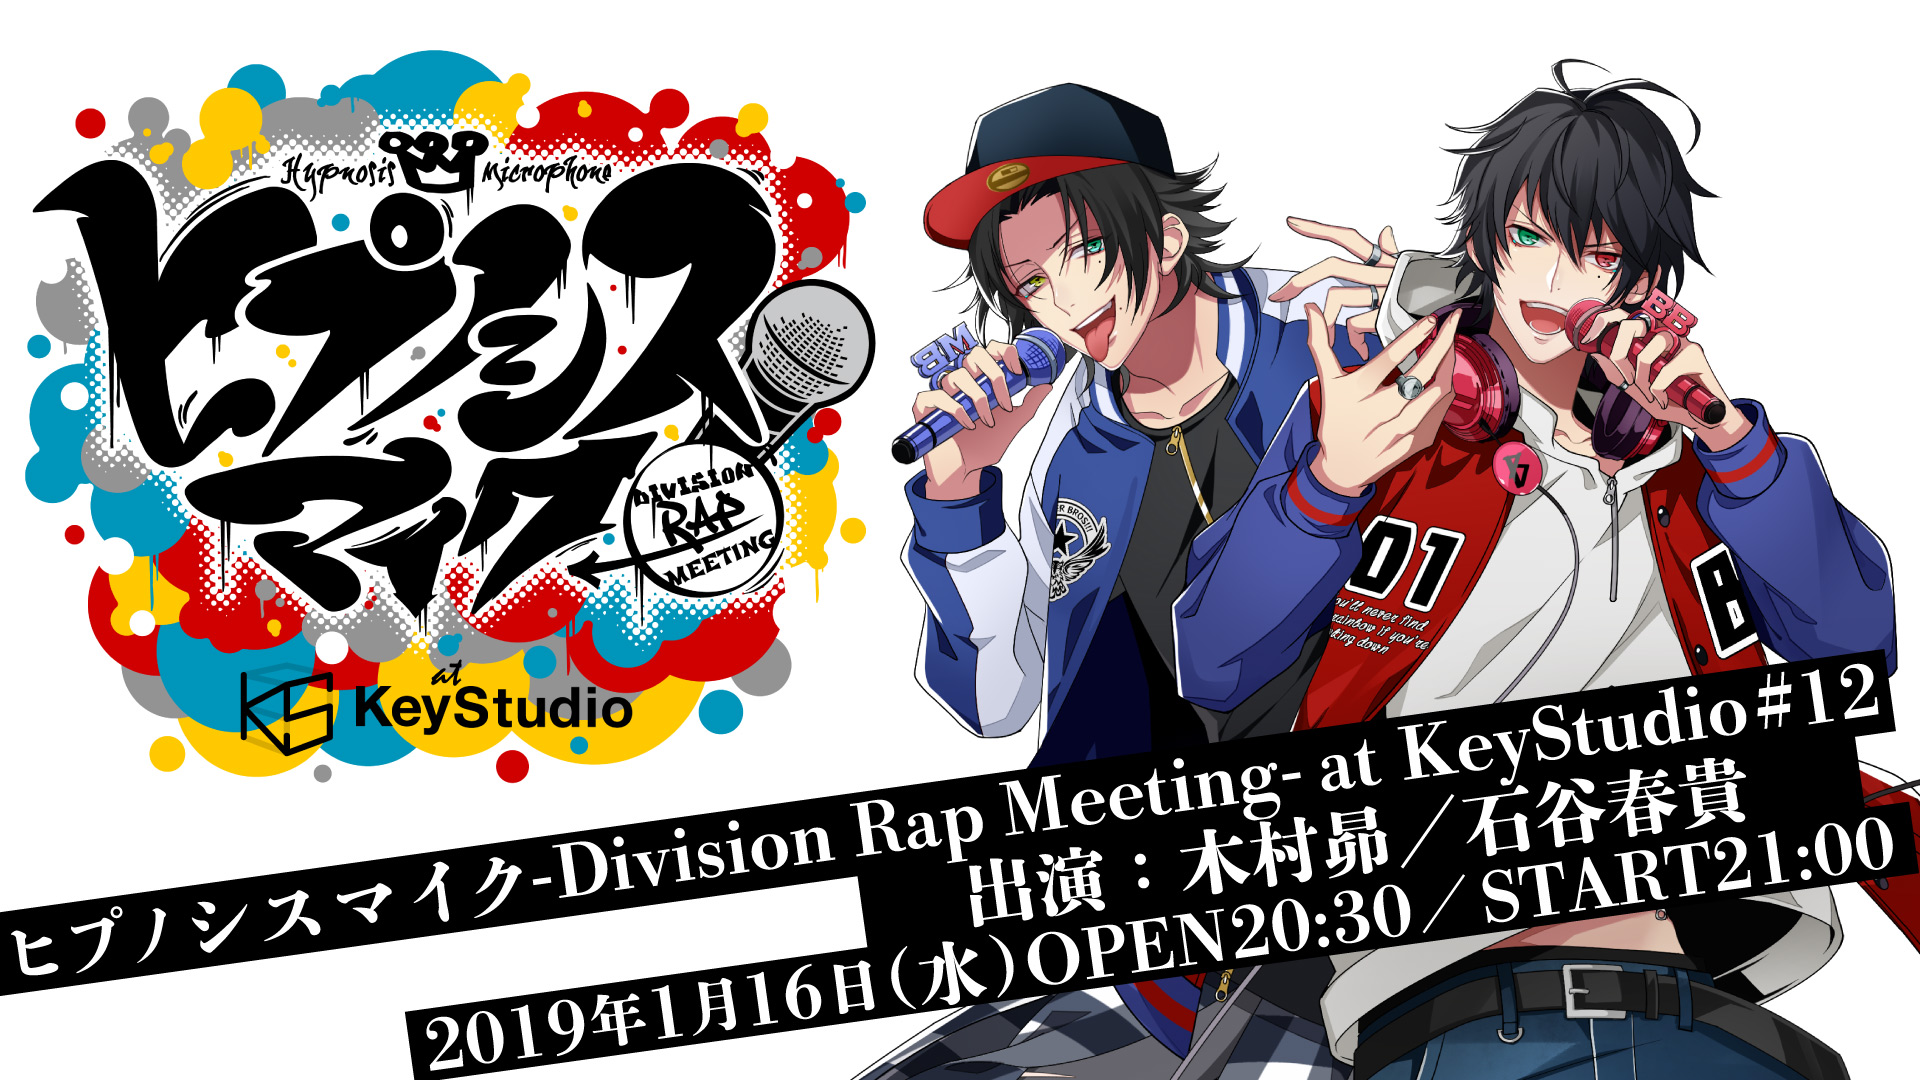 ヒプノシスマイク -Division Rap Meeting- at KeyStudio #12